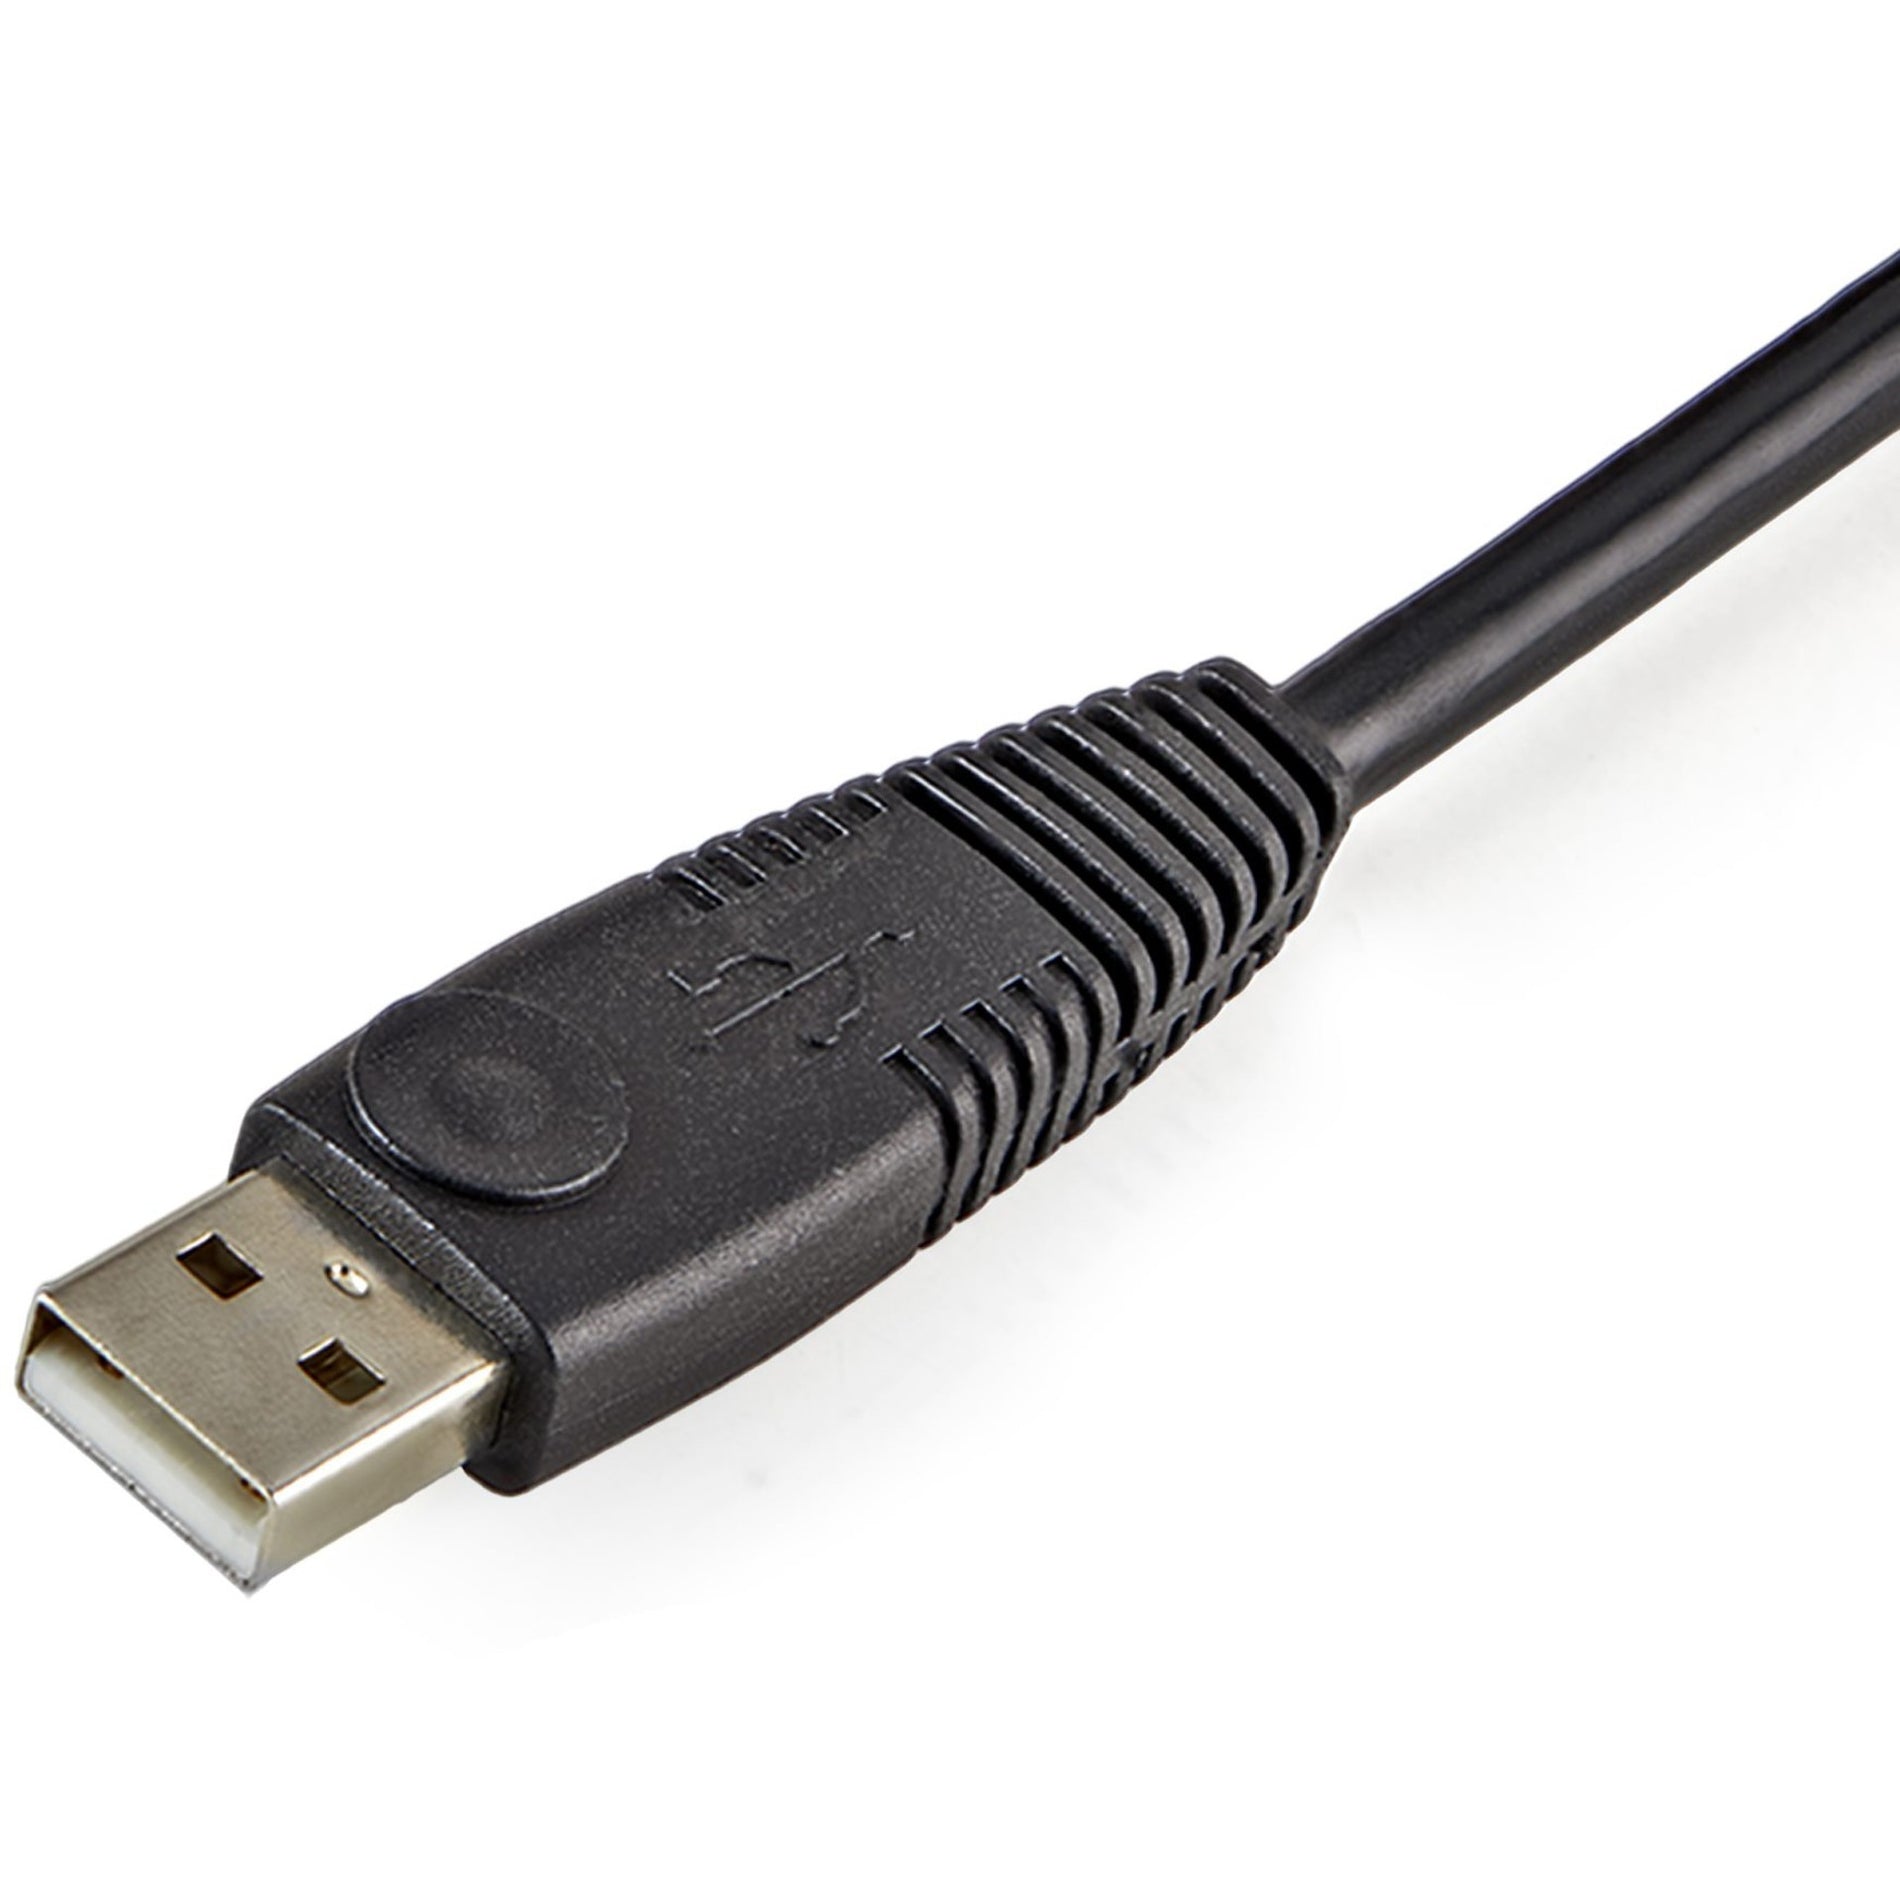 StarTech.com USBDVI4N1A10 10 ft 4-en-1 cable KVM USB DVI con audio conductor de cobre resolución admitida de 1920 x 1200 negro.   Marca: StarTech.com  Traducción de la marca: EstrellaTecnología.